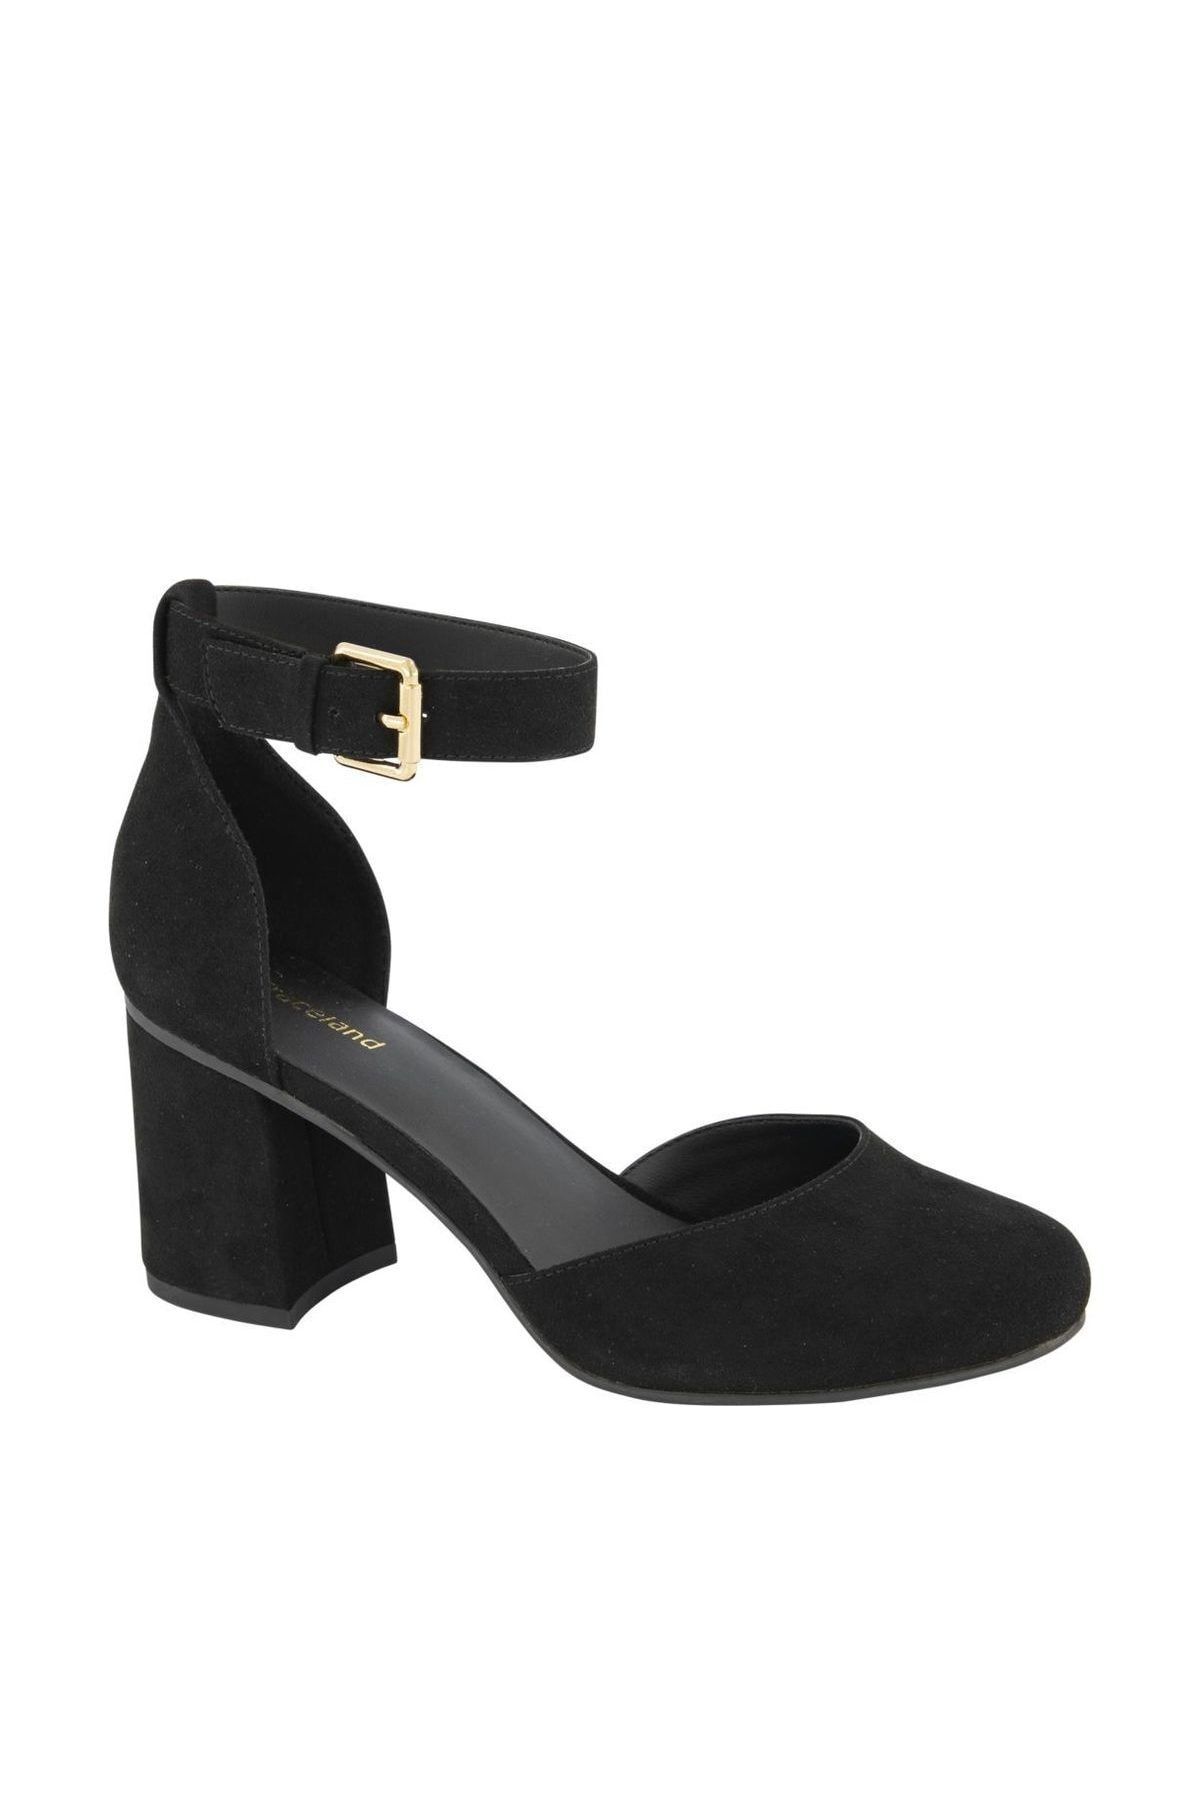 Graceland Deichmann Siyah Topuklu Ayakkabı